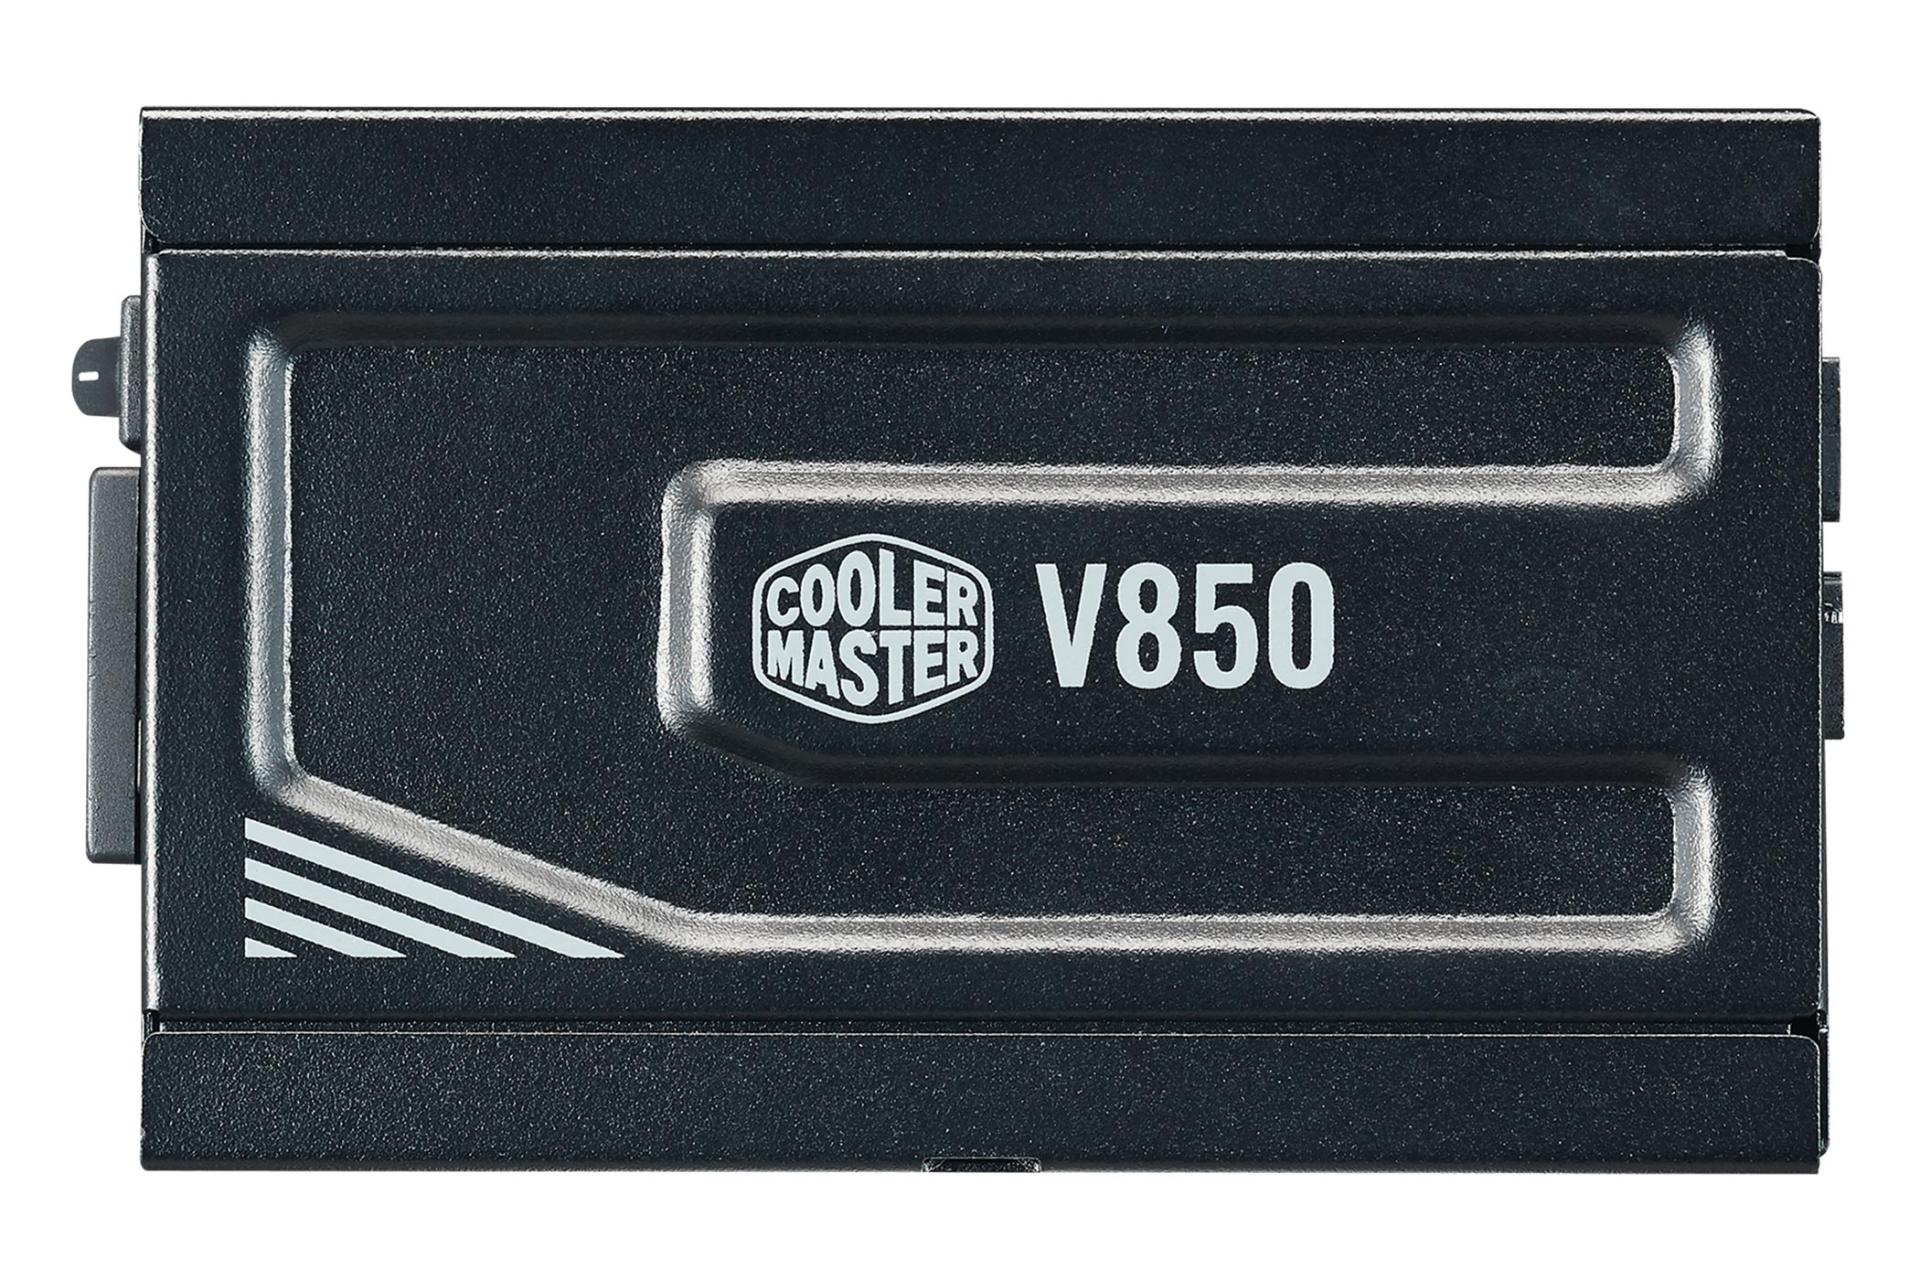 پاور کامپیوتر کولر مستر V850 SFX Gold با توان 850 وات نمای کنار